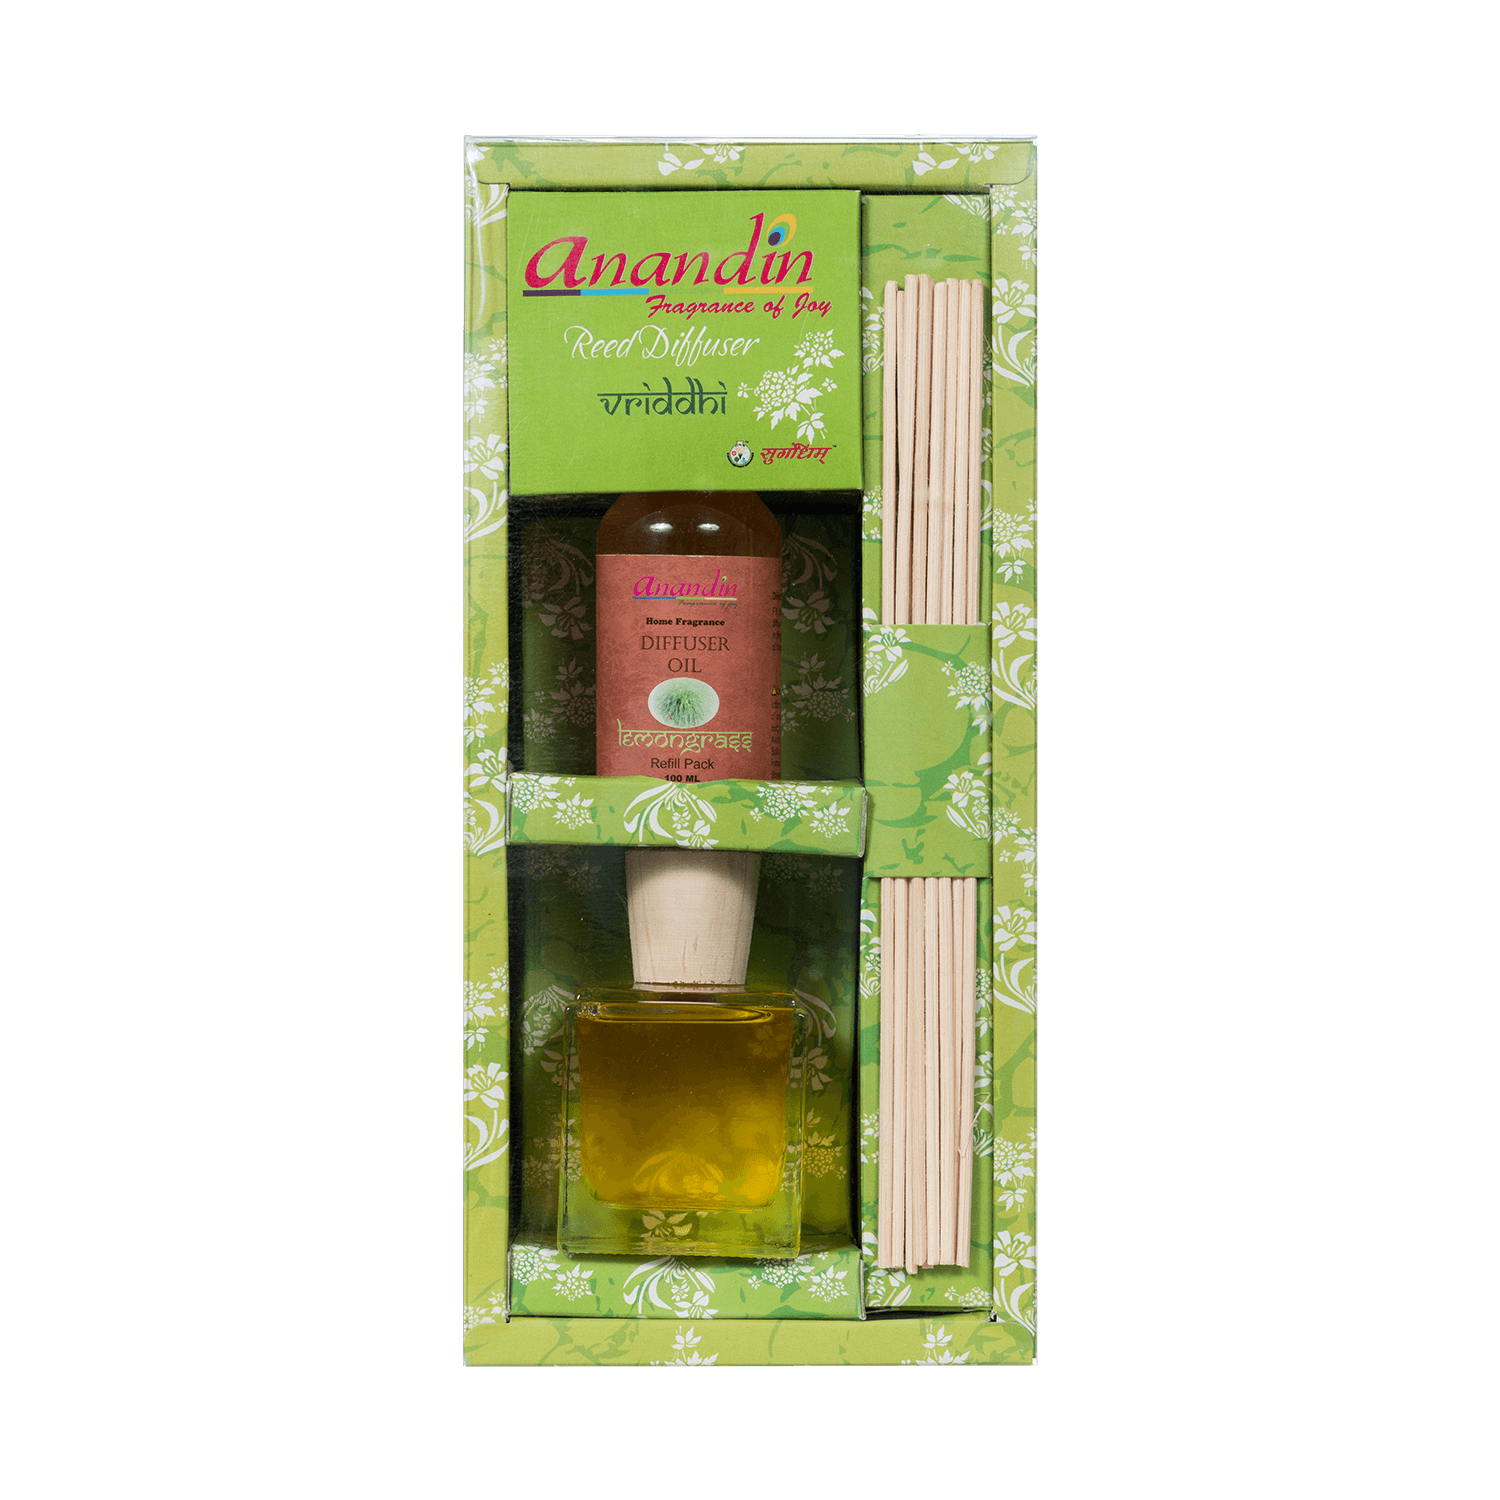 Anandin Reed Diffuser - Vriddhi/Lemongrass Fragrance - 200ml+10Sticks